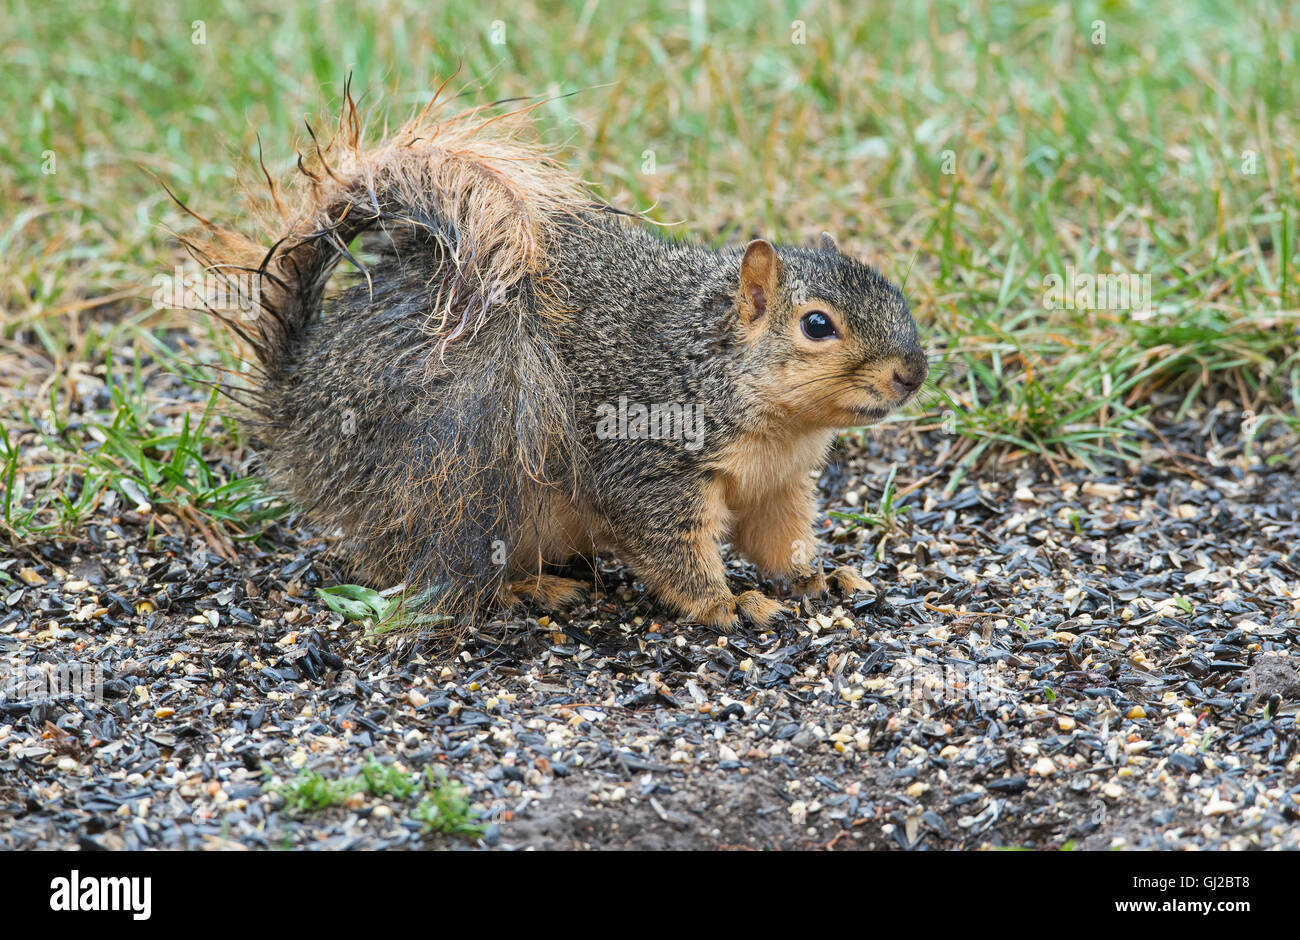 Eastern Fox Squirrel (Sciurus niger) füttert Vogelsaat, in der Nähe von Vogelfutterhäuschen, Park, nach Regensturm, E NA, Von Skip Moody/Dembinsky Photo Assoc Stockfoto